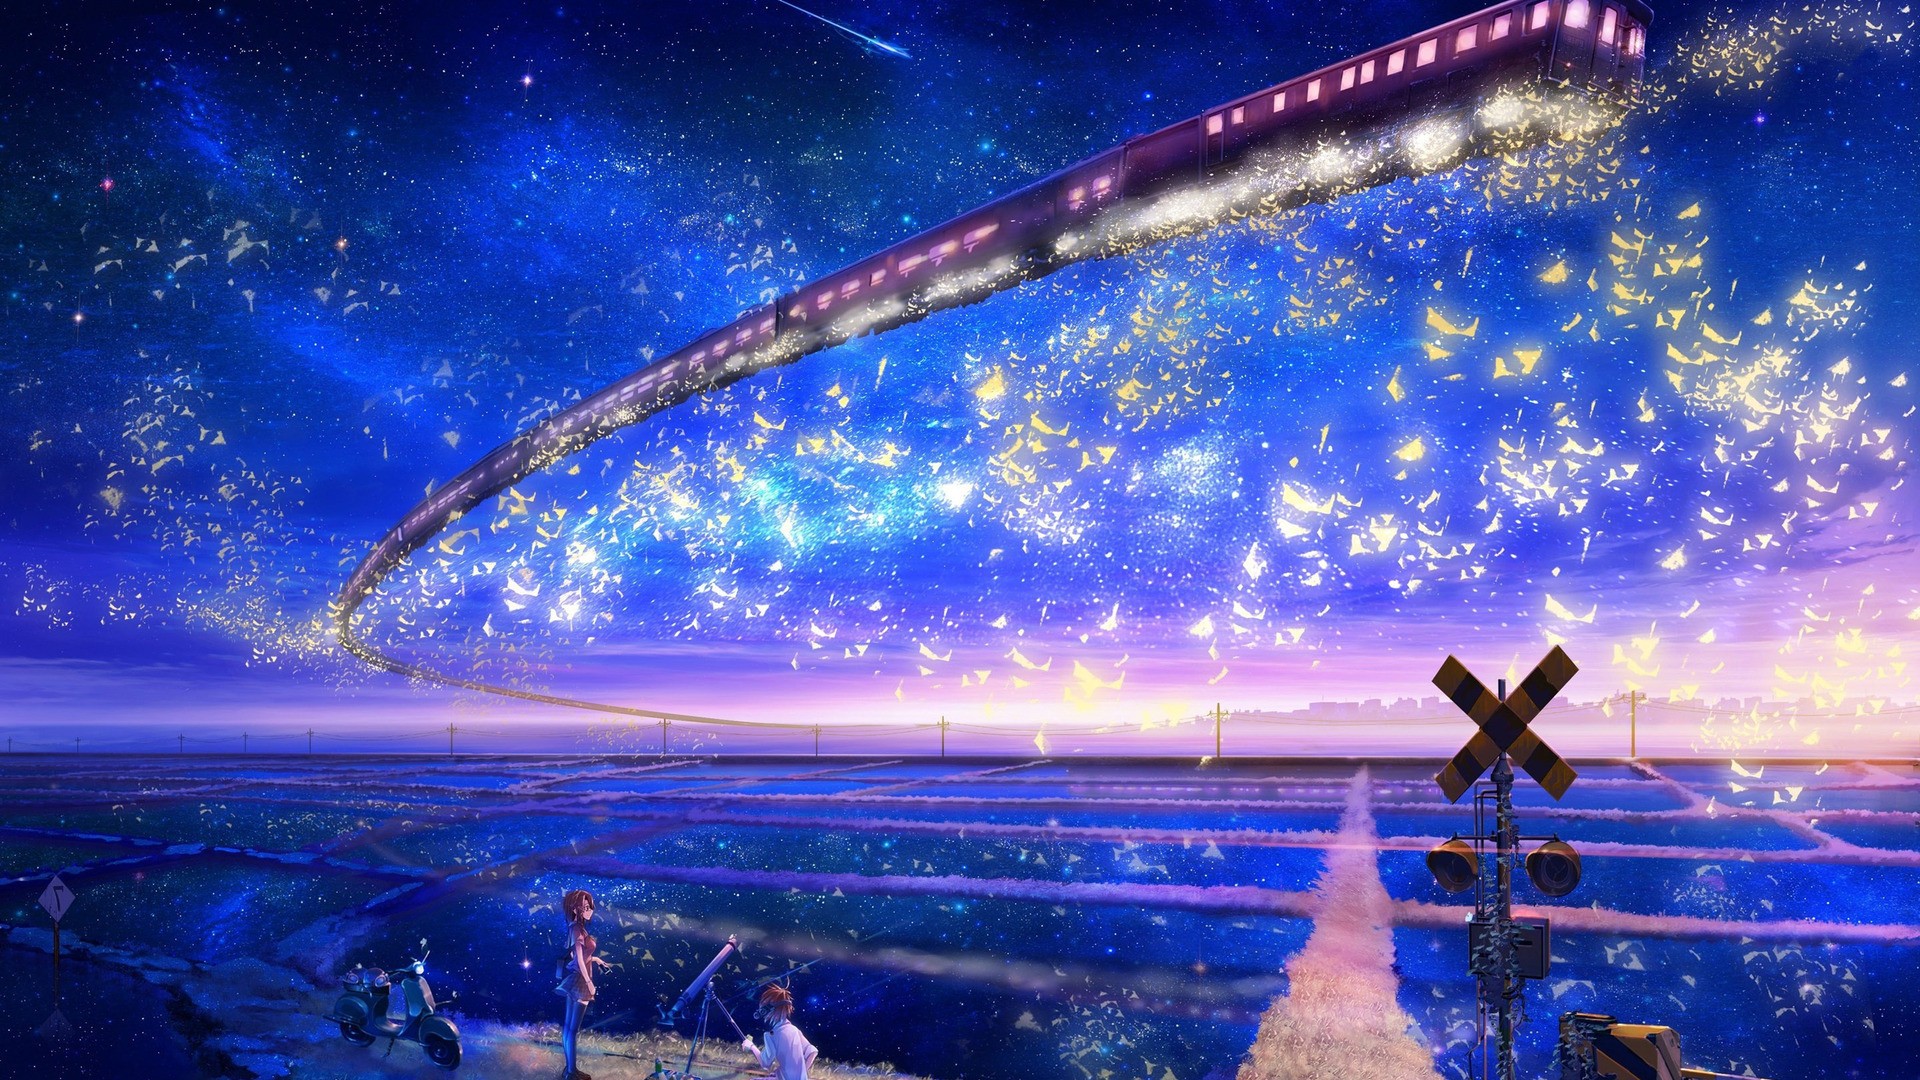 Anime 1920x1080 train artwork fantasy art flying stars anime vehicle sky